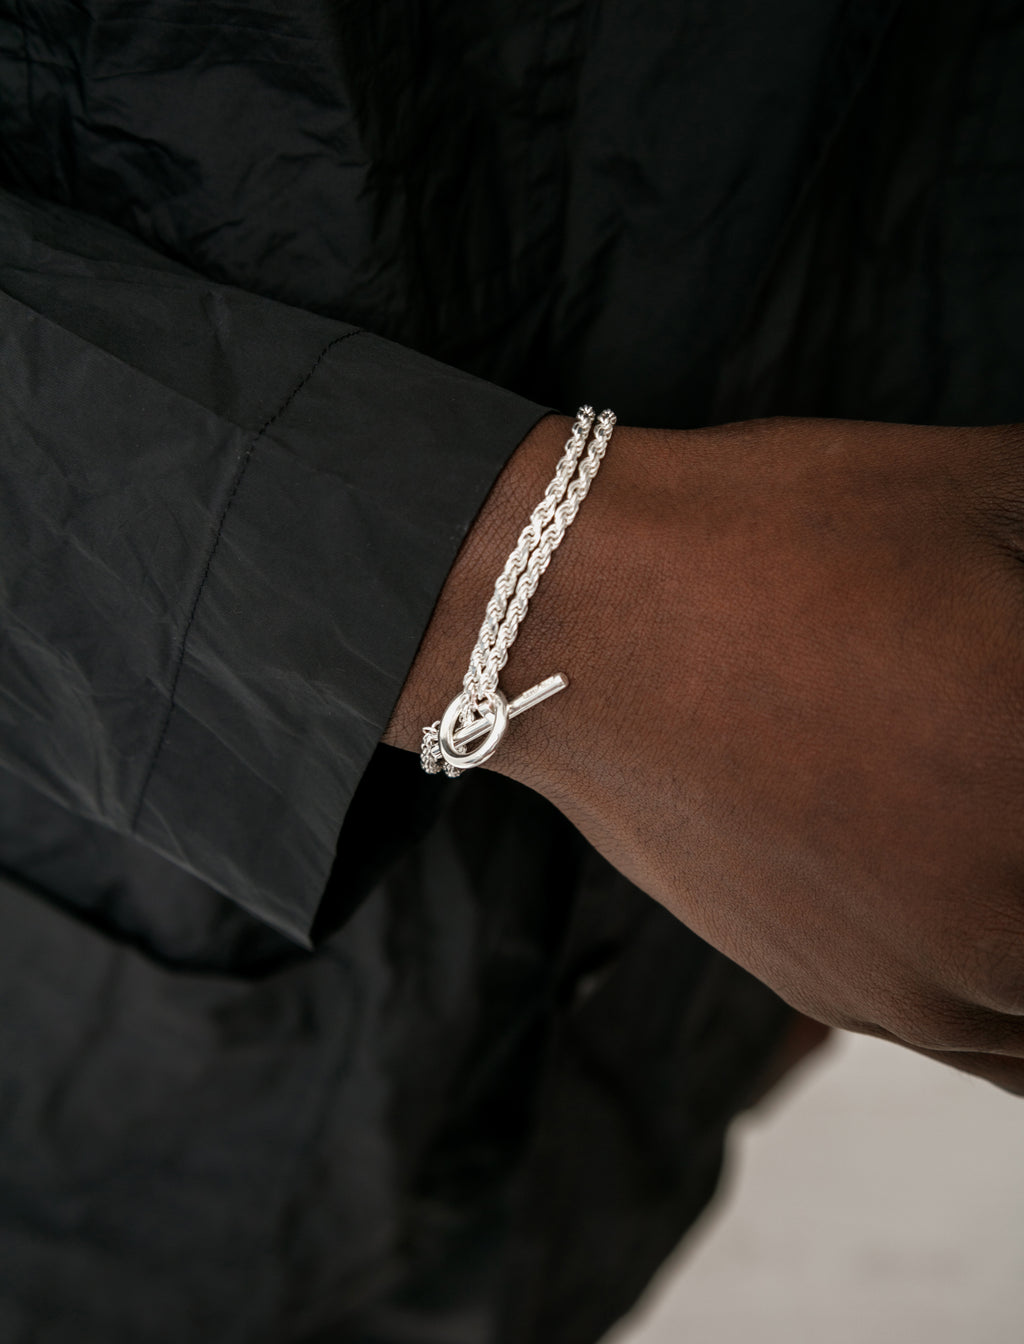 8,778円美品 All blues /Rope Bracelet Large silver